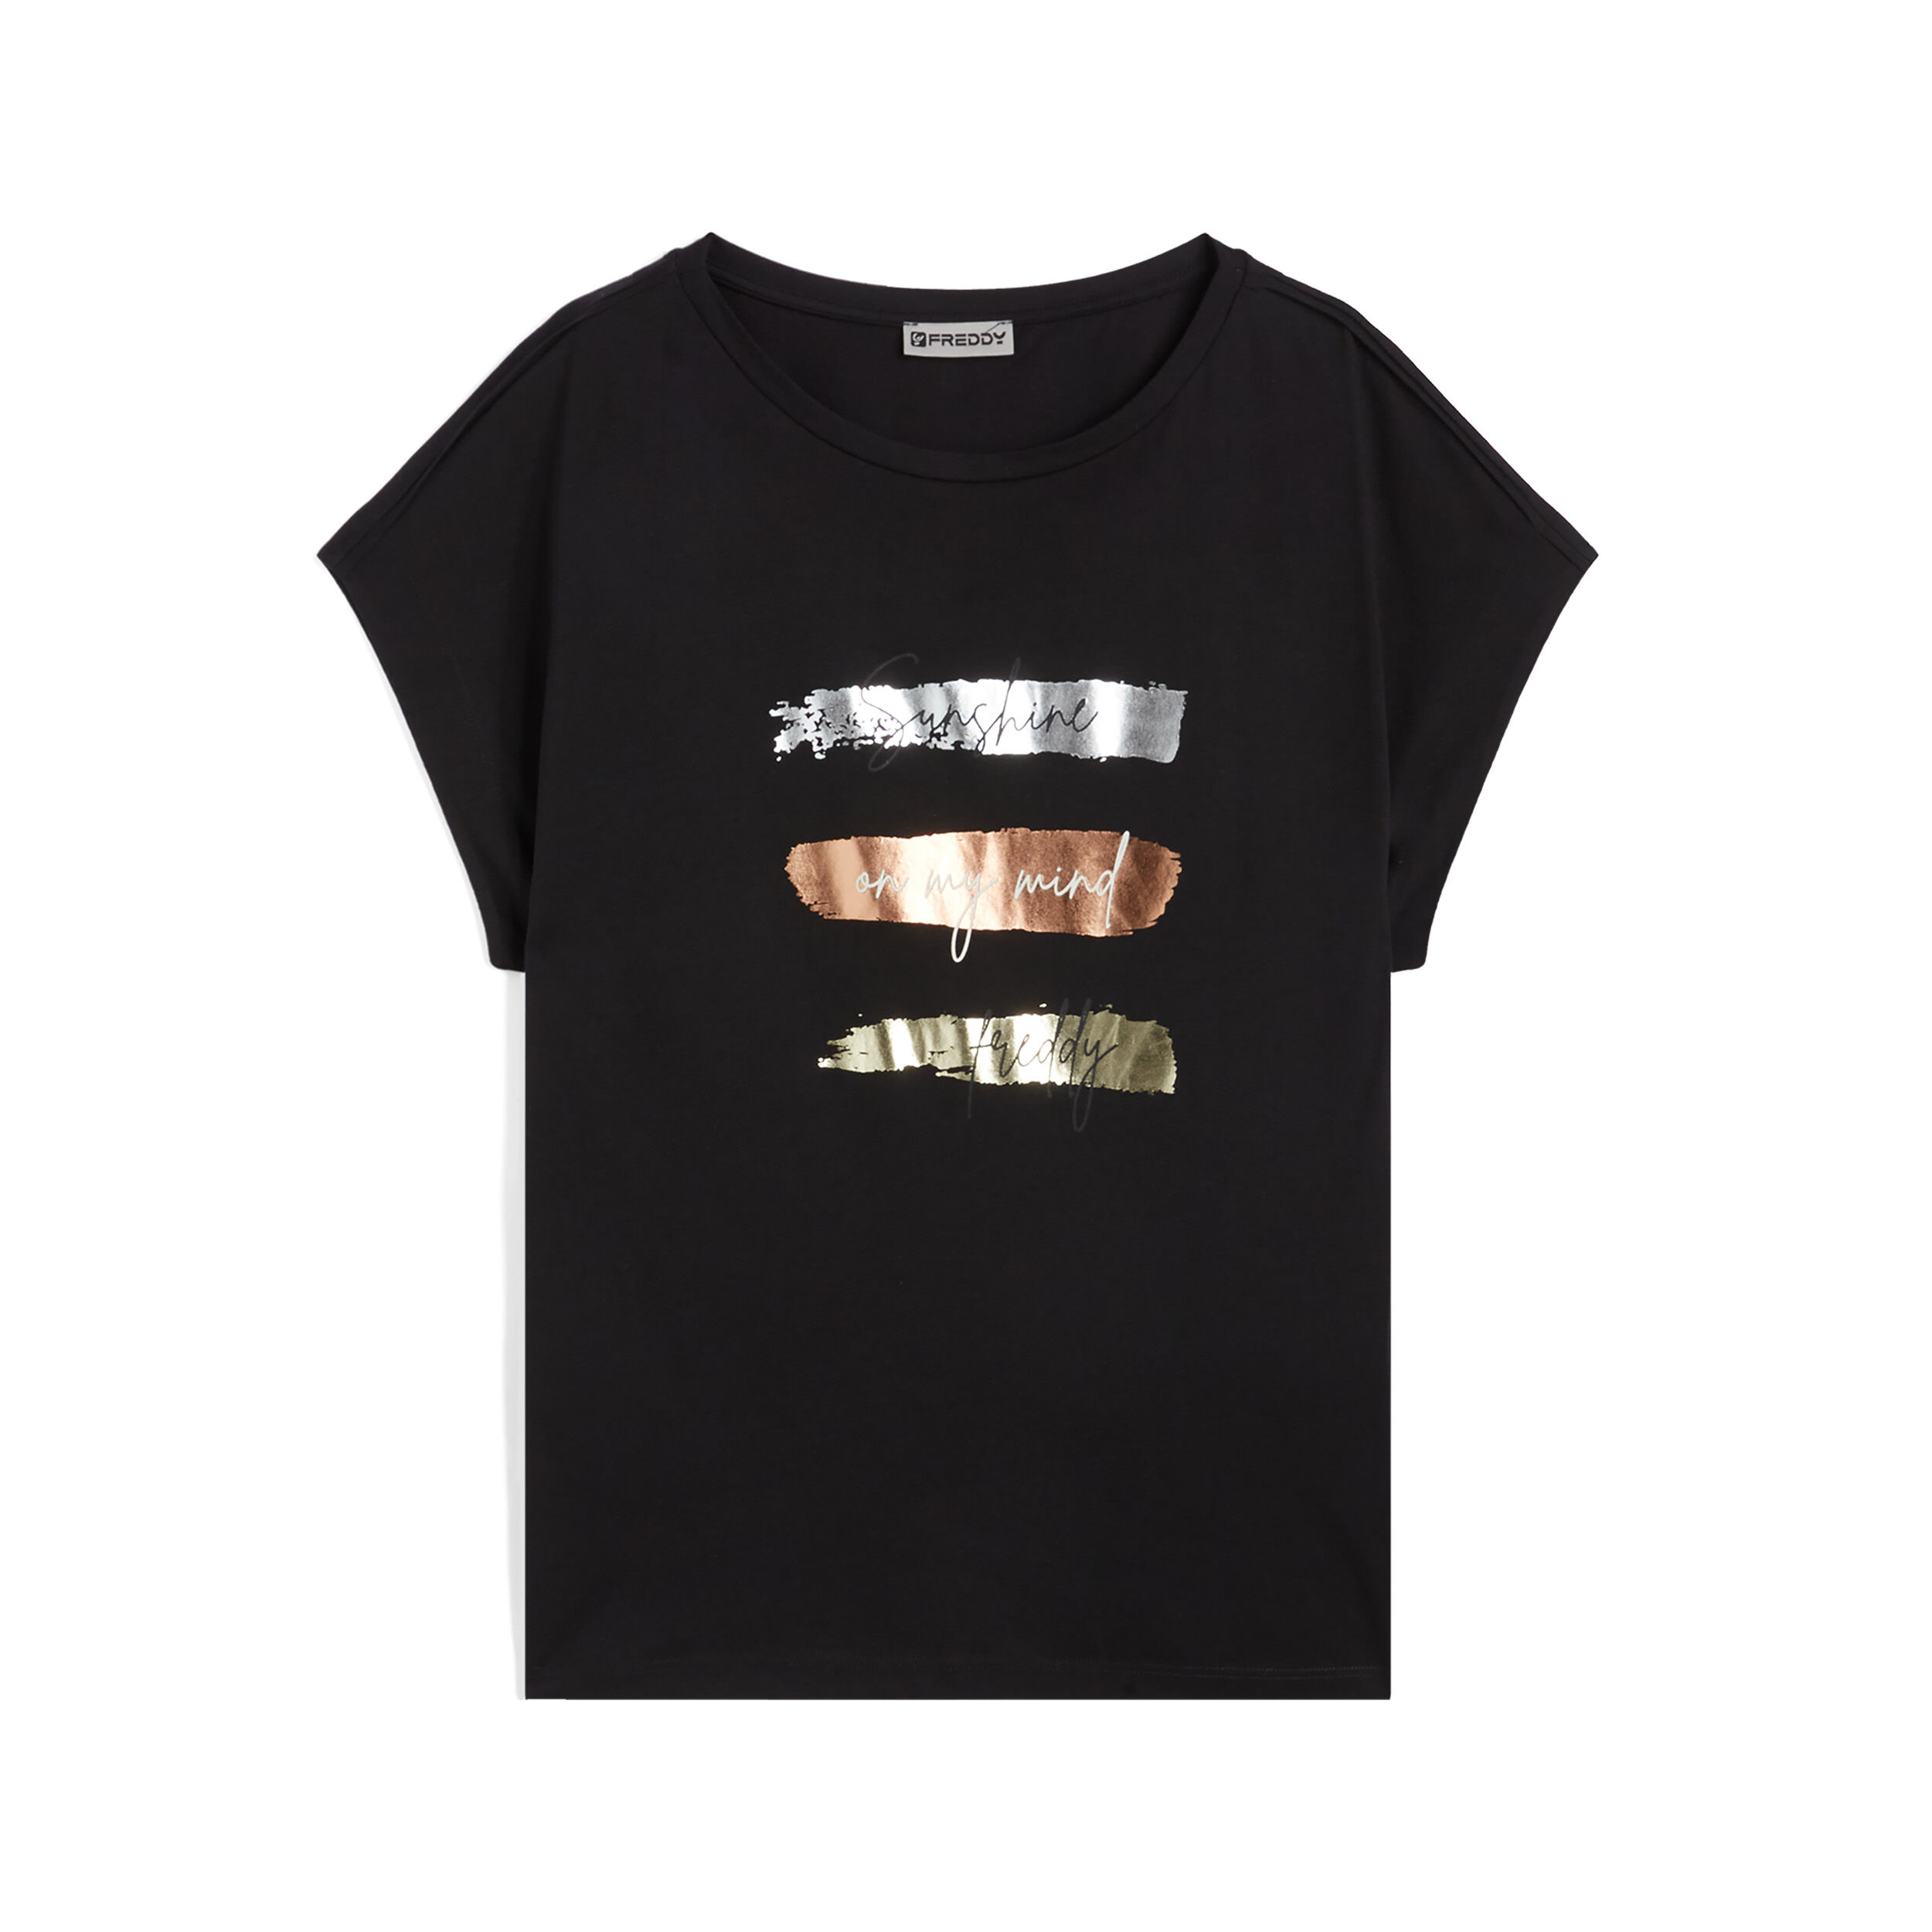 Freddy T-shirt da donna in jersey modal con stampe metallizzate Nero Donna Small